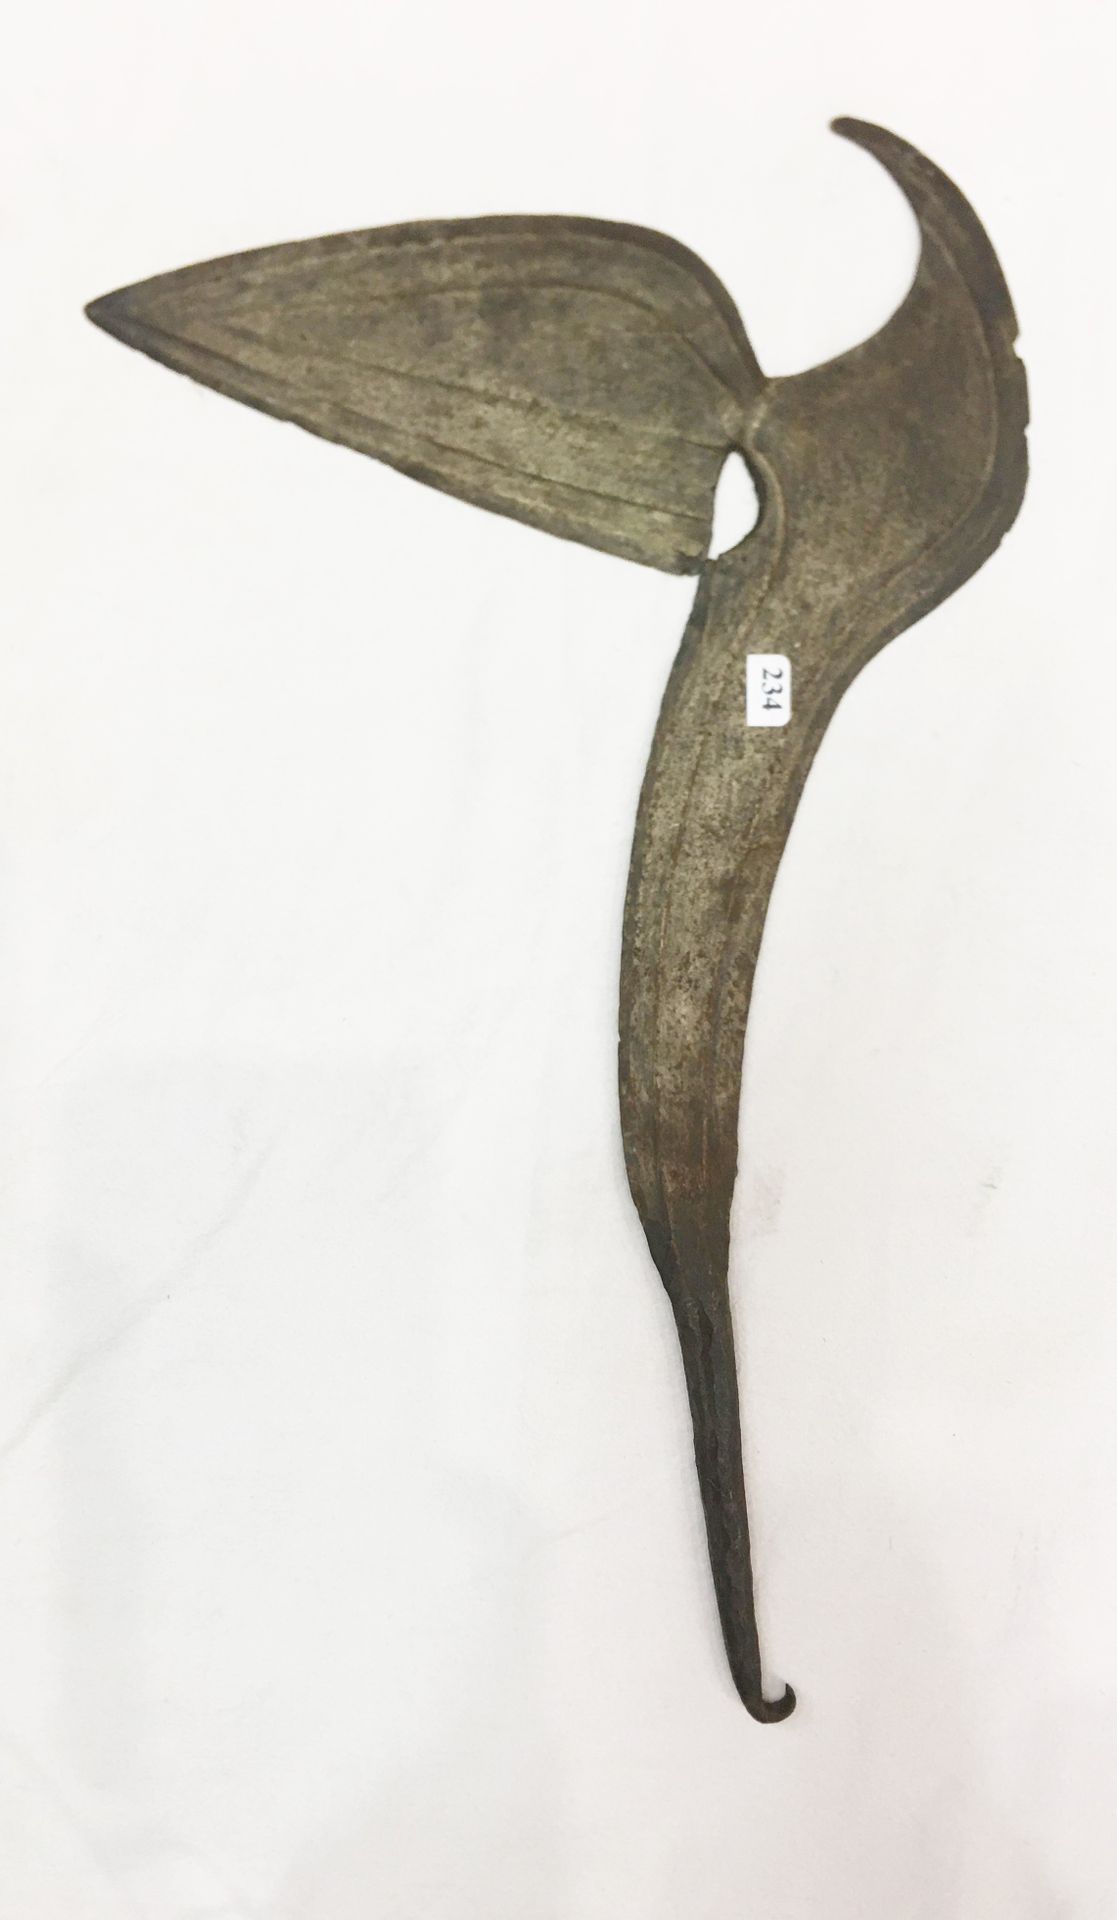 Null 科塔地区的投掷刀。加蓬。铁质，有古老的铜锈。

长：41厘米